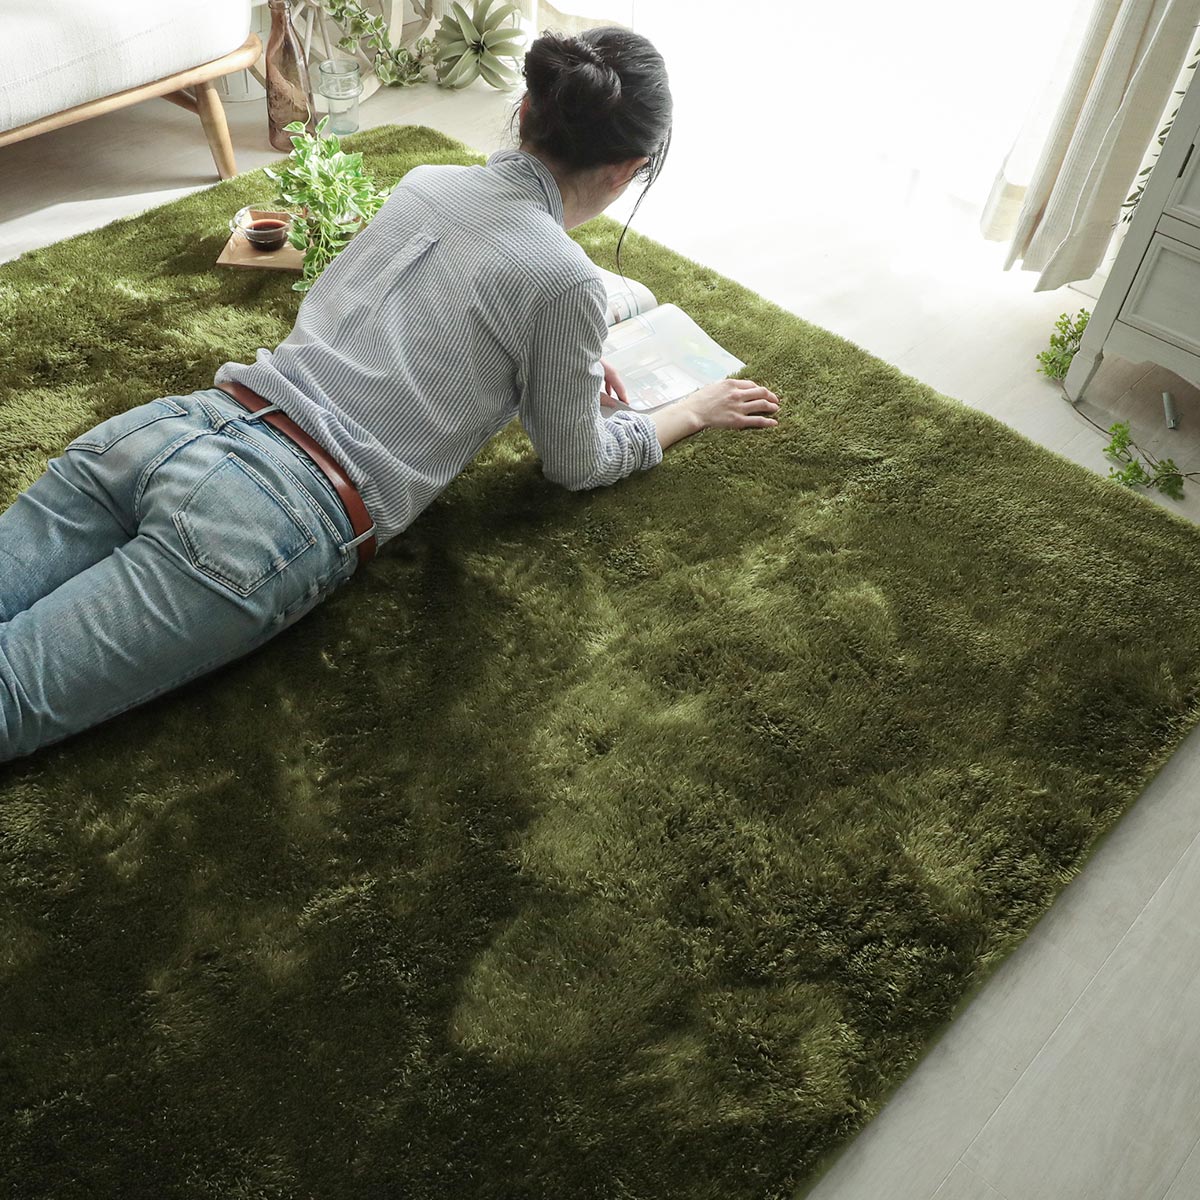 高級柄 カーペット 絨毯 約230×230cm 更紗グリーン 洗える ホット